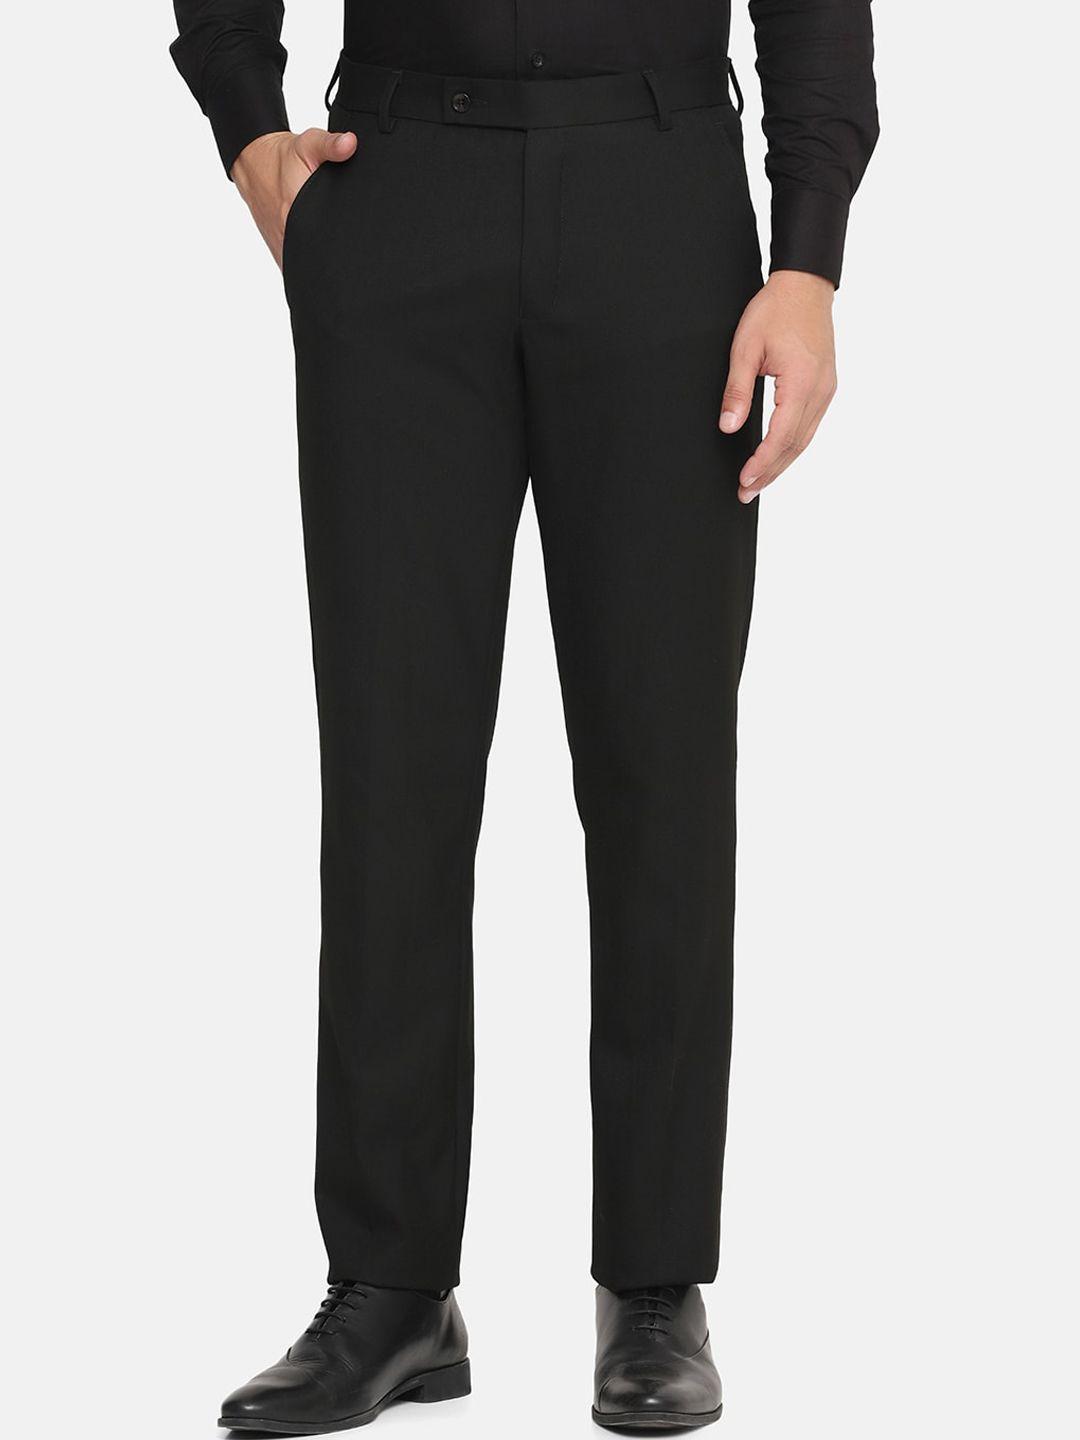 tahvo men black comfort formal trousers